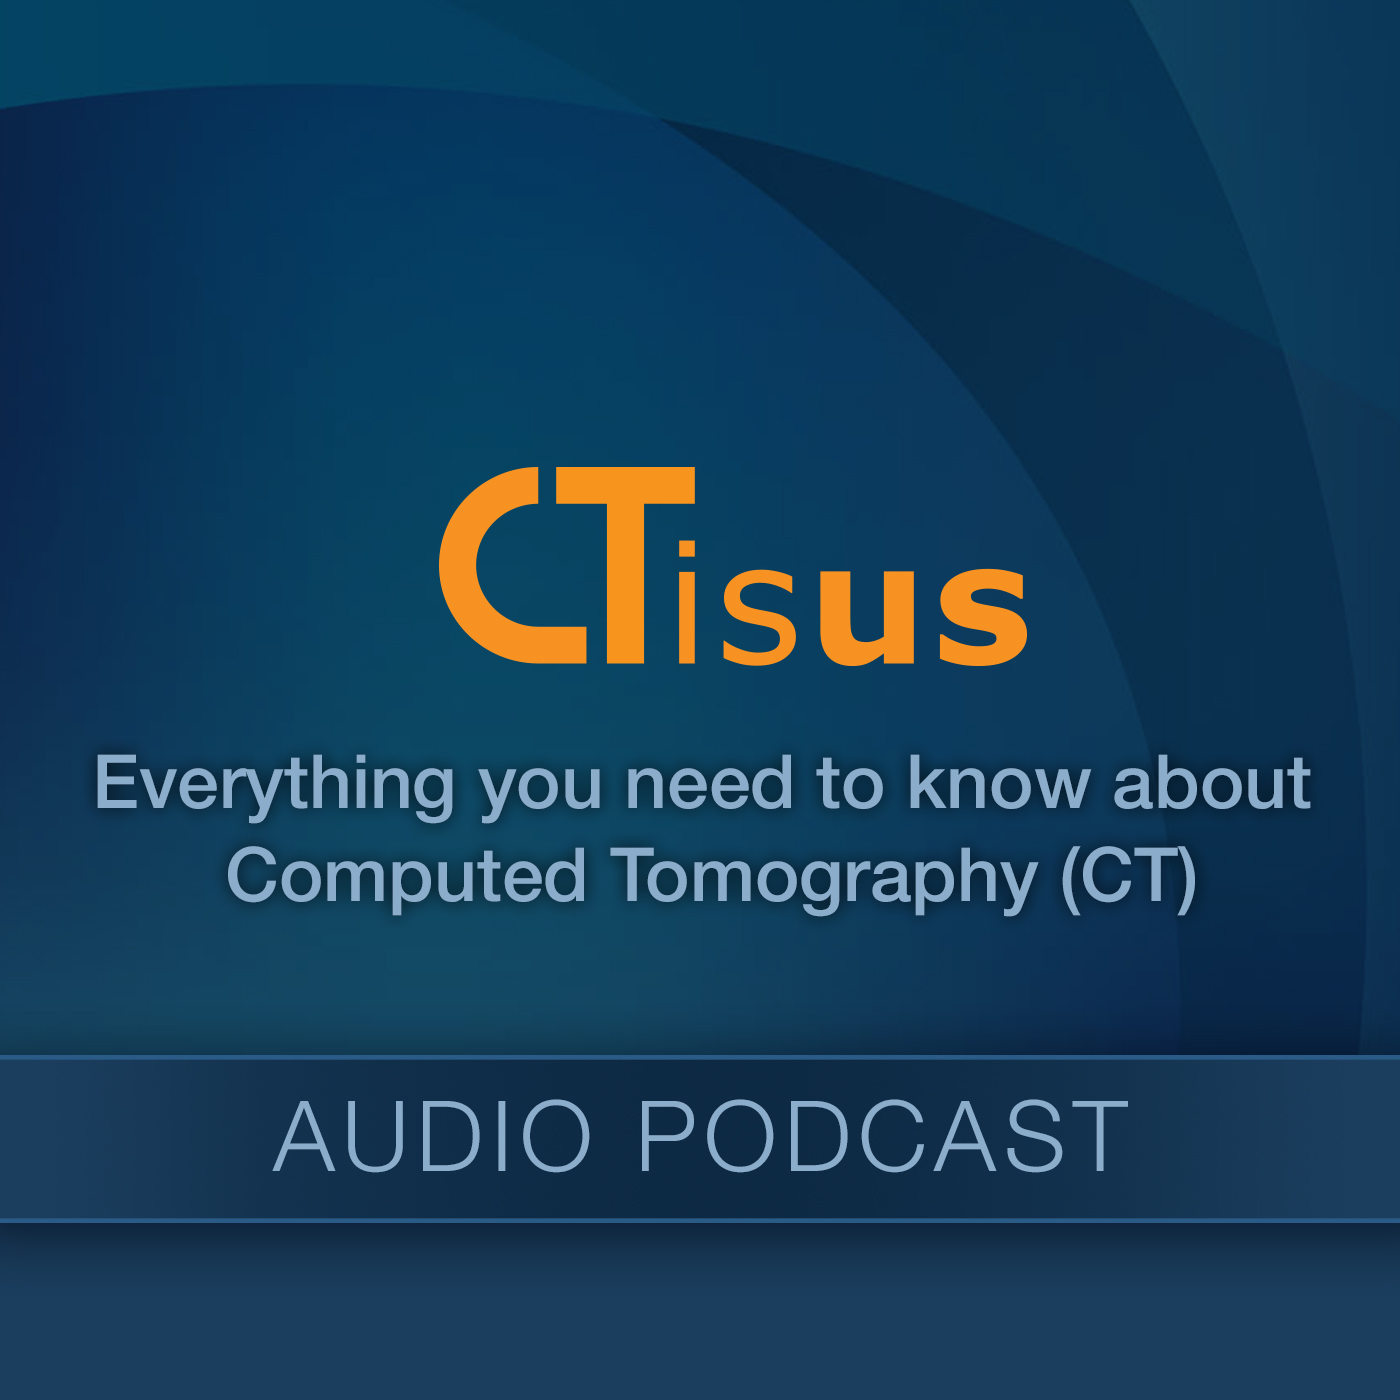 Audio Podcast - CTisus.com